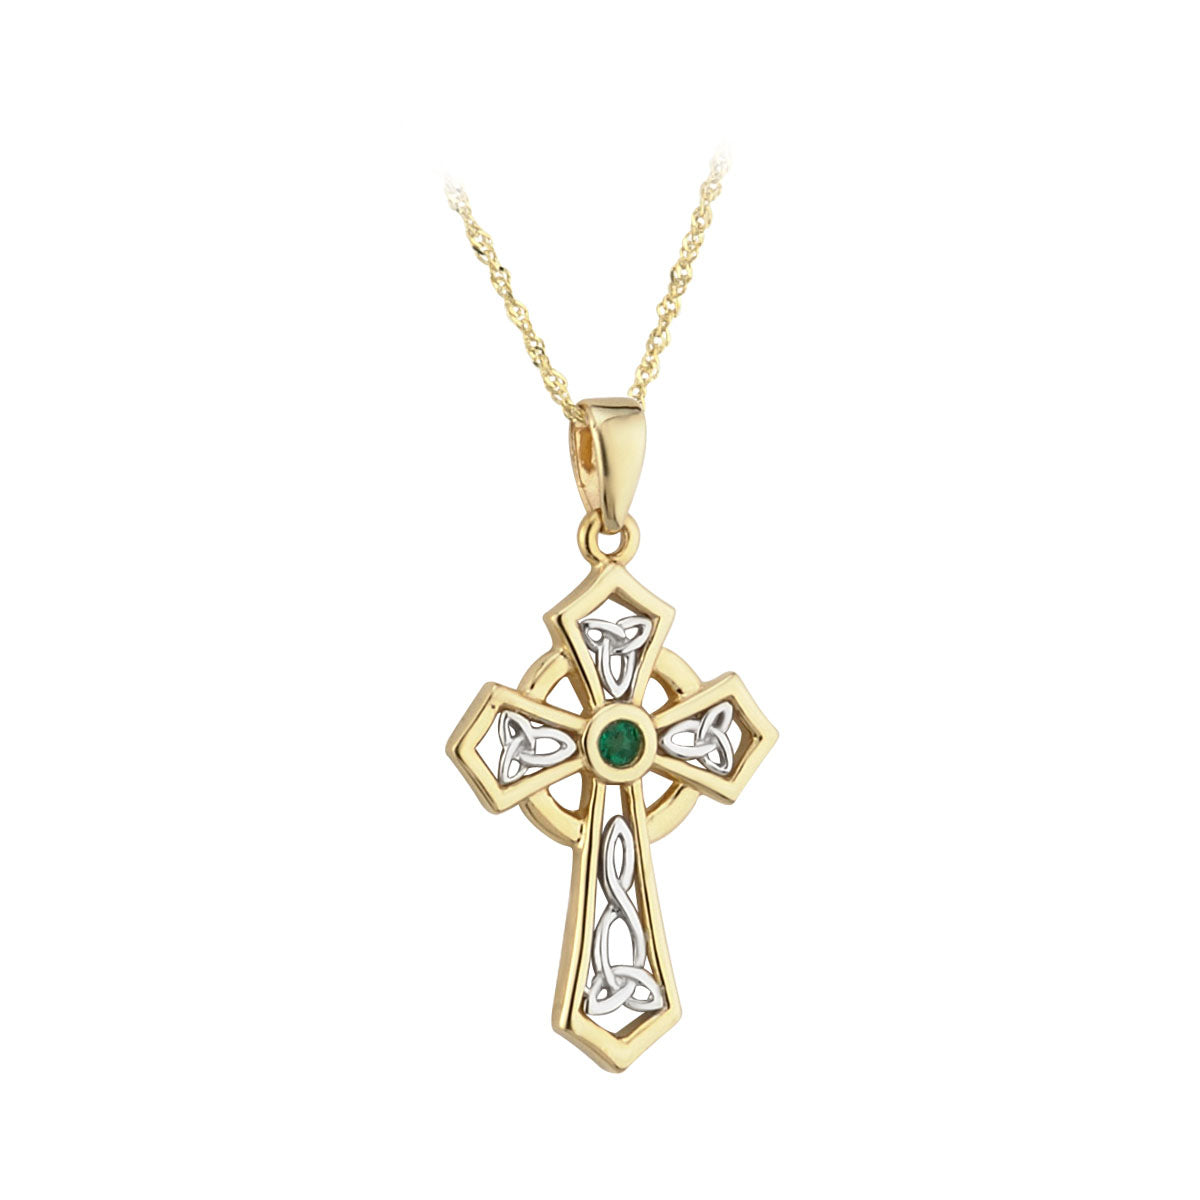 14k gold emerald cross pendant s45142 from Solvar